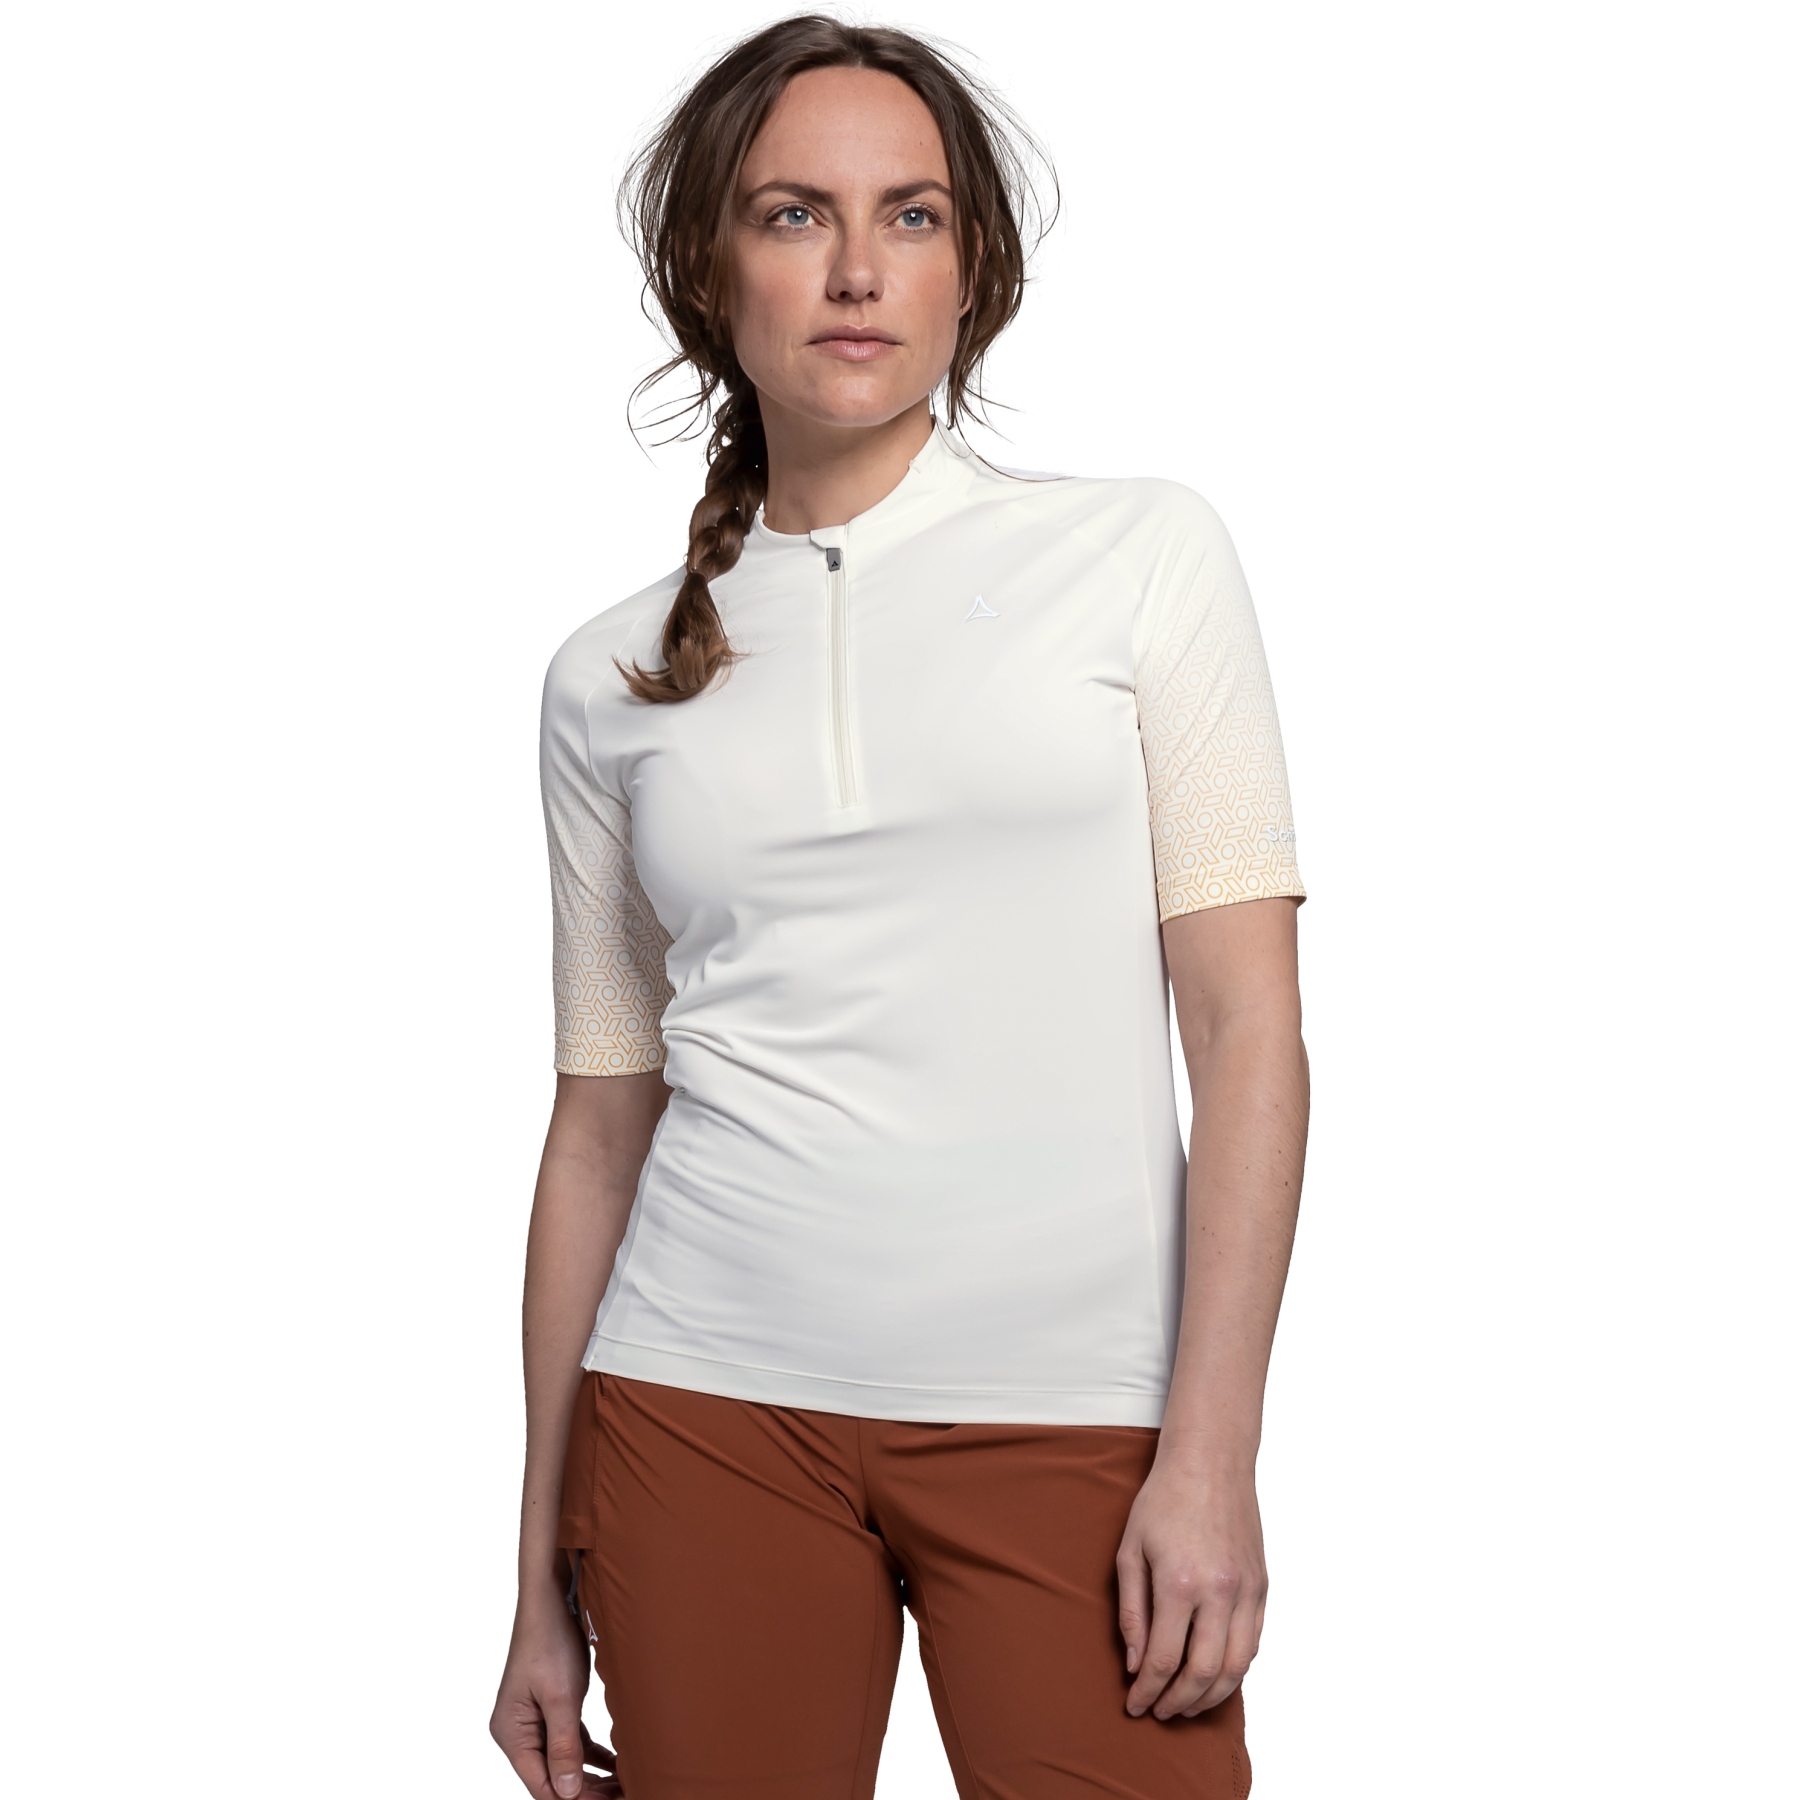 Produktbild von Schöffel Dust Shirt Damen - whisper white 1140